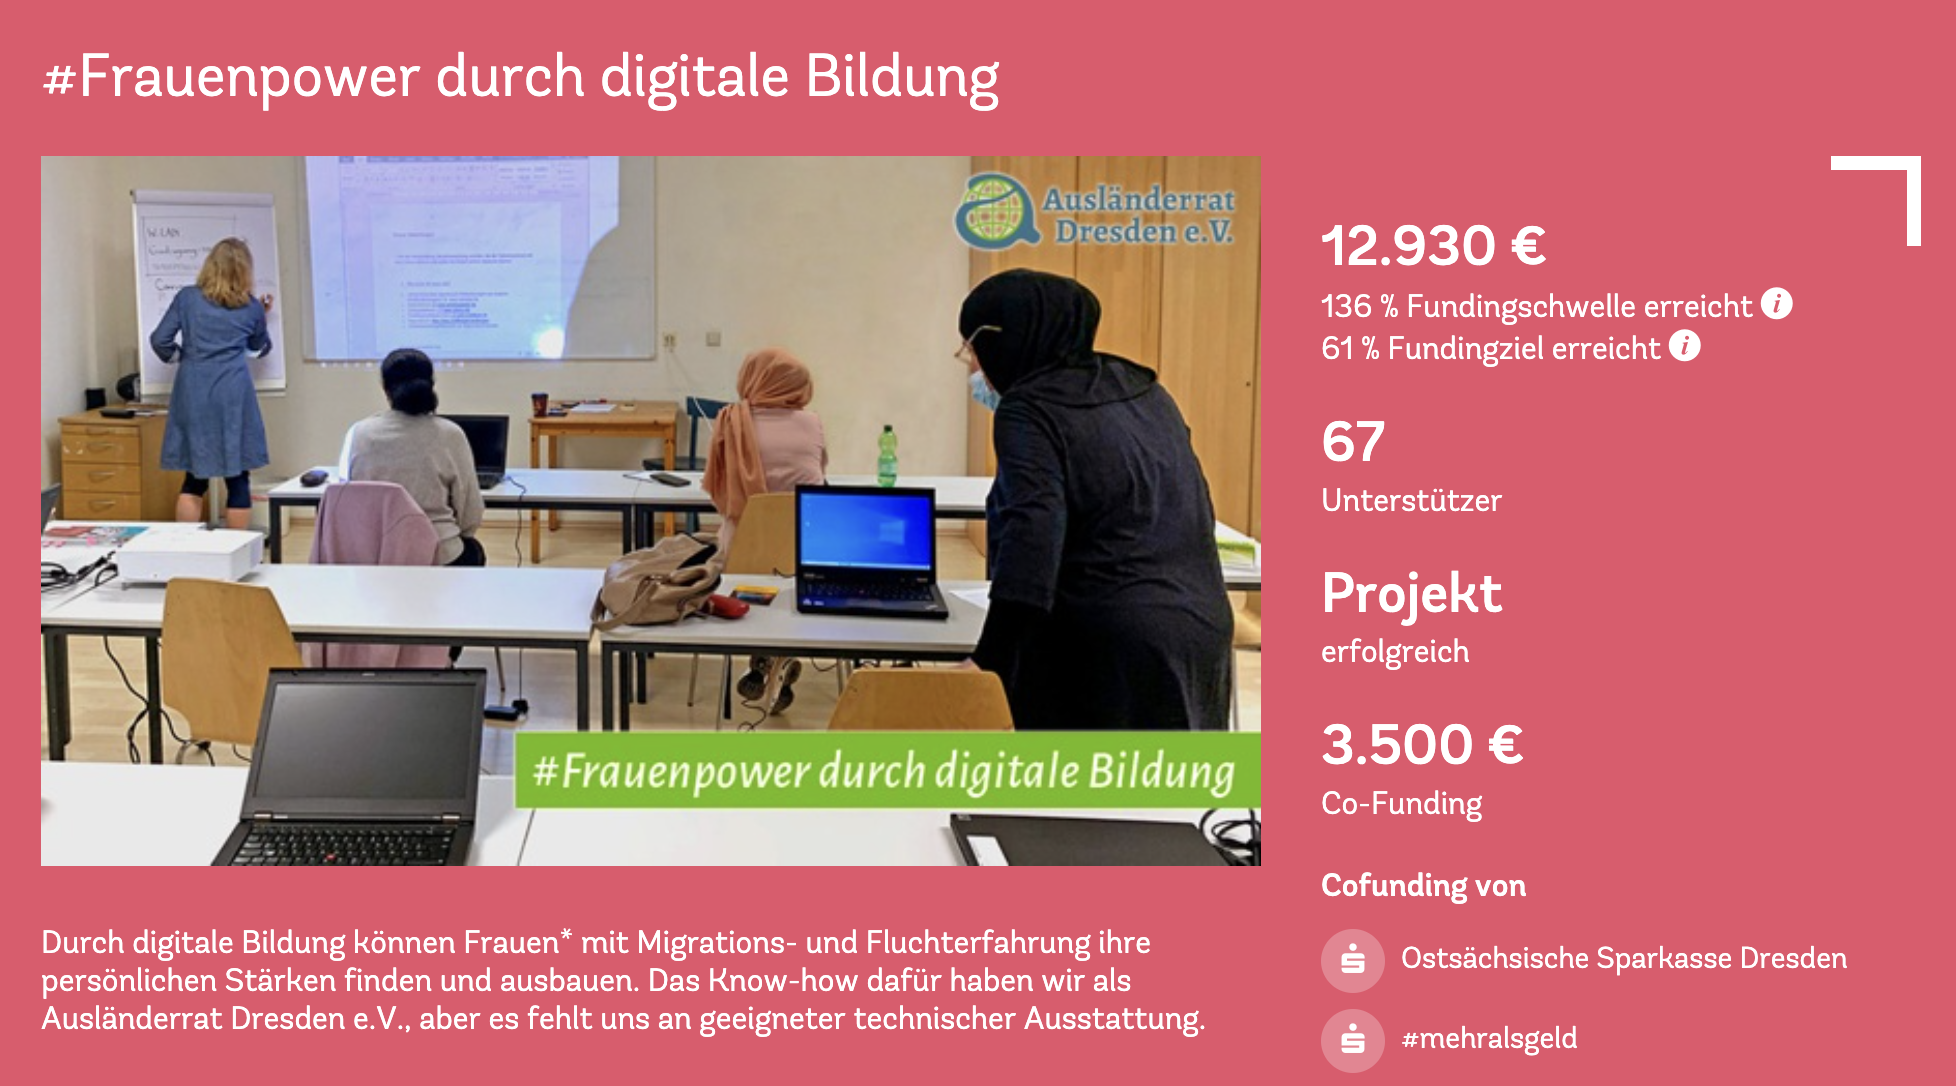 Spenden statt Schenken: Fundraising #Frauenpower durch digitale Bildung für den Ausländerrat Dresden e.V.